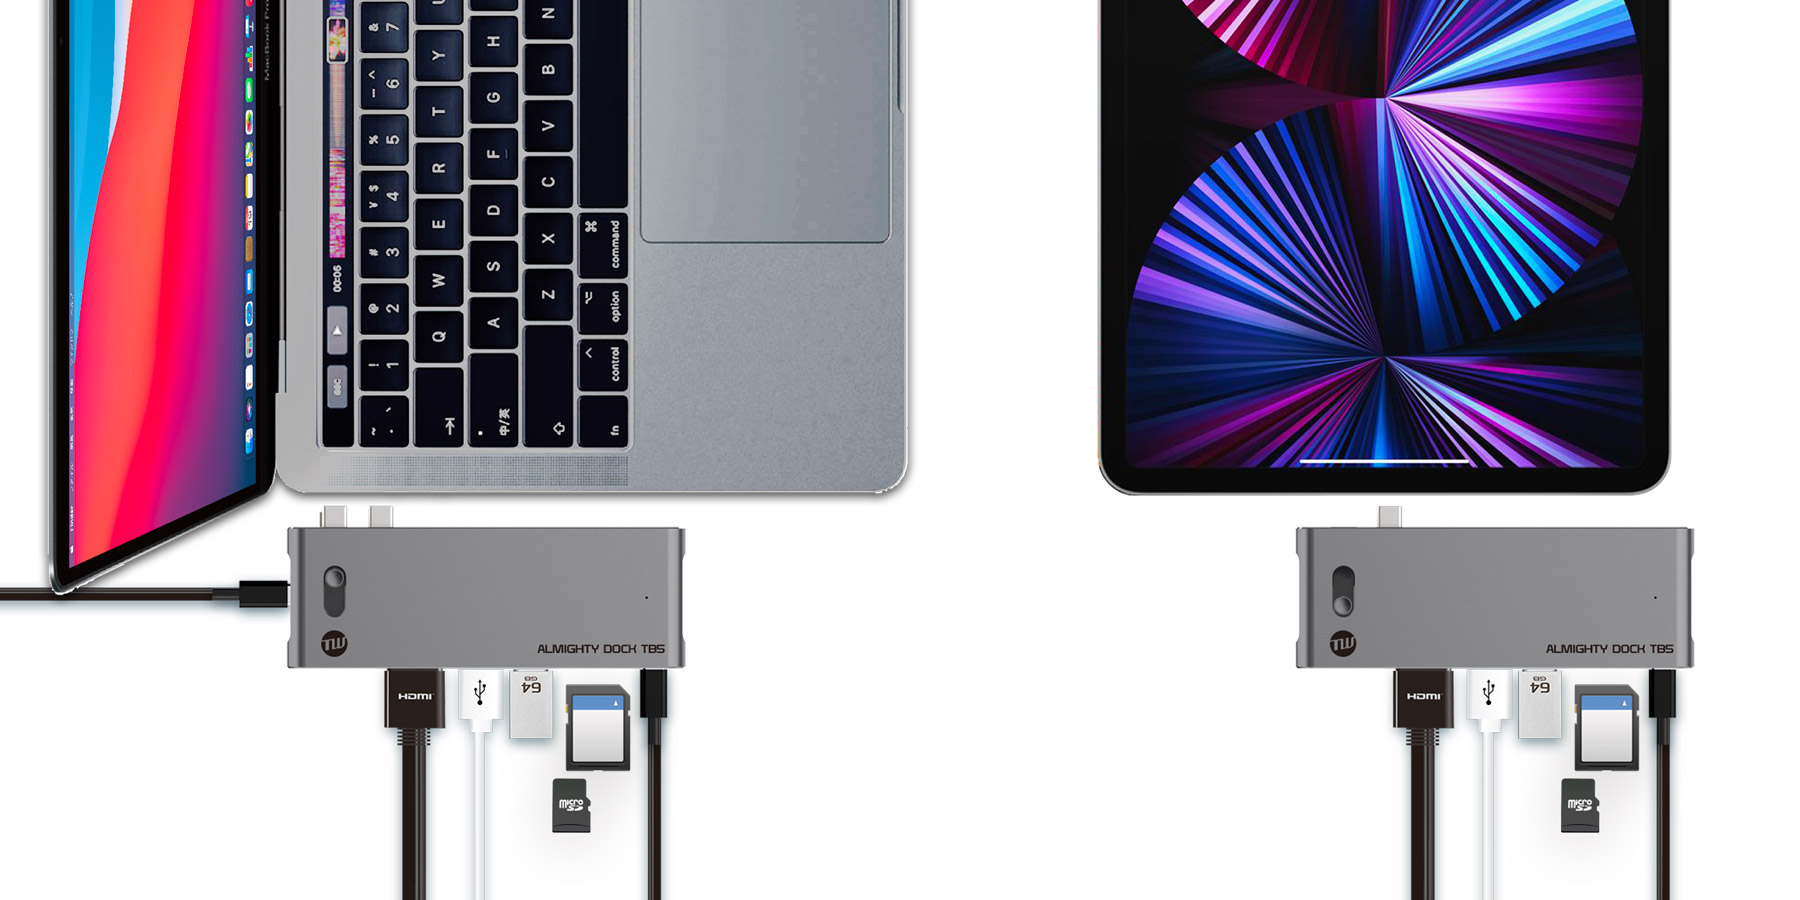 MacBook ProのThunderbolt 3（USB-C）ポートを7つのポートに拡張！スライドスイッチを使用すれば、iPadやWindows PCでも6 in 1 USBハブとして利用可能